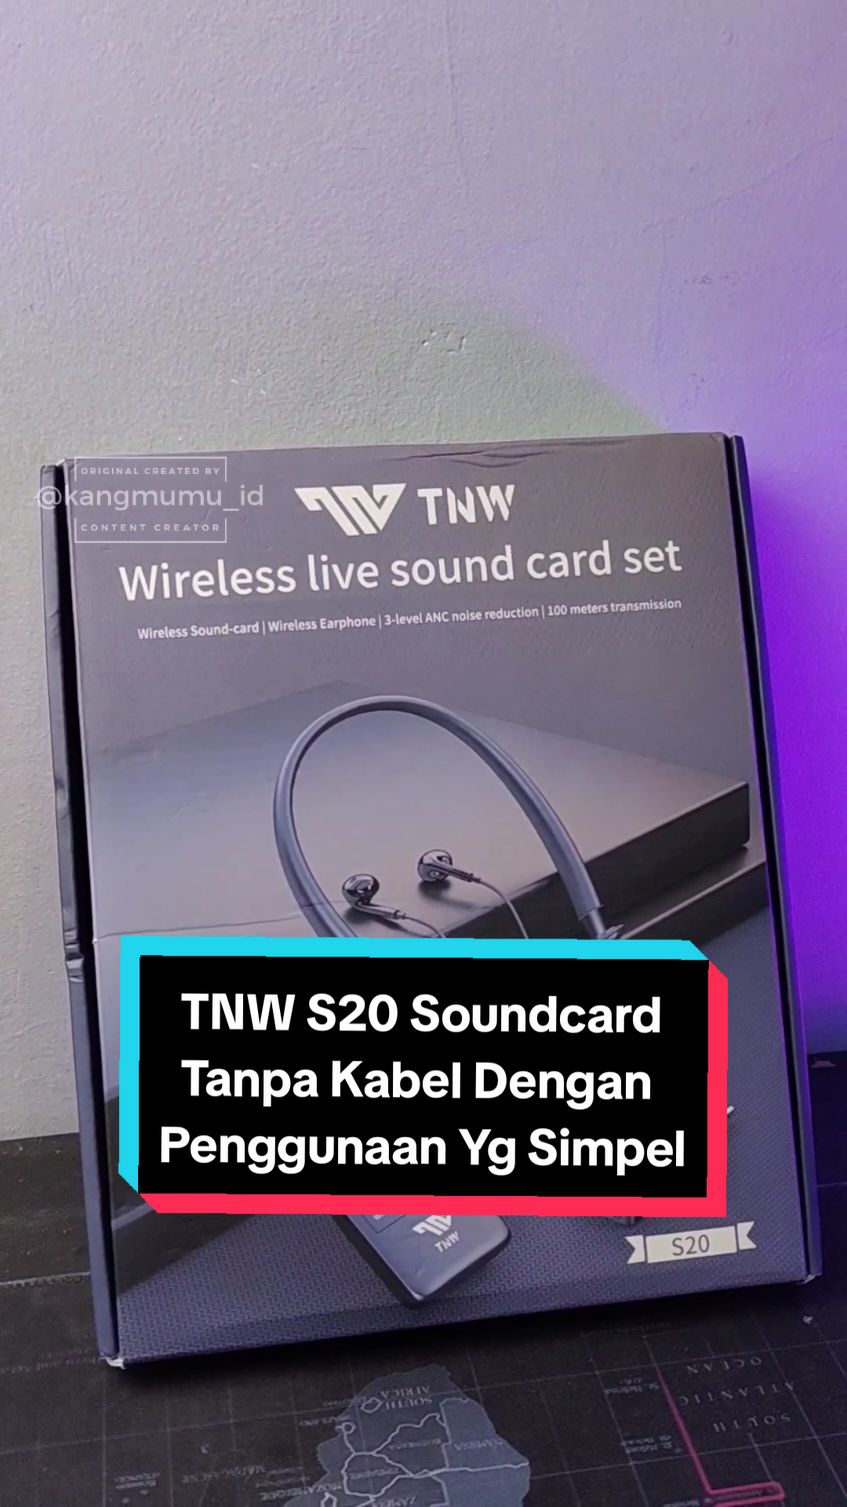 Soundcard portabel wireless yg bisa digunakan untuk semua perangkat cocok untuk live streamng. #Soundcardlive #SoundcardWireless #WirelessSoundcard #JaminanHargaTerbaik 